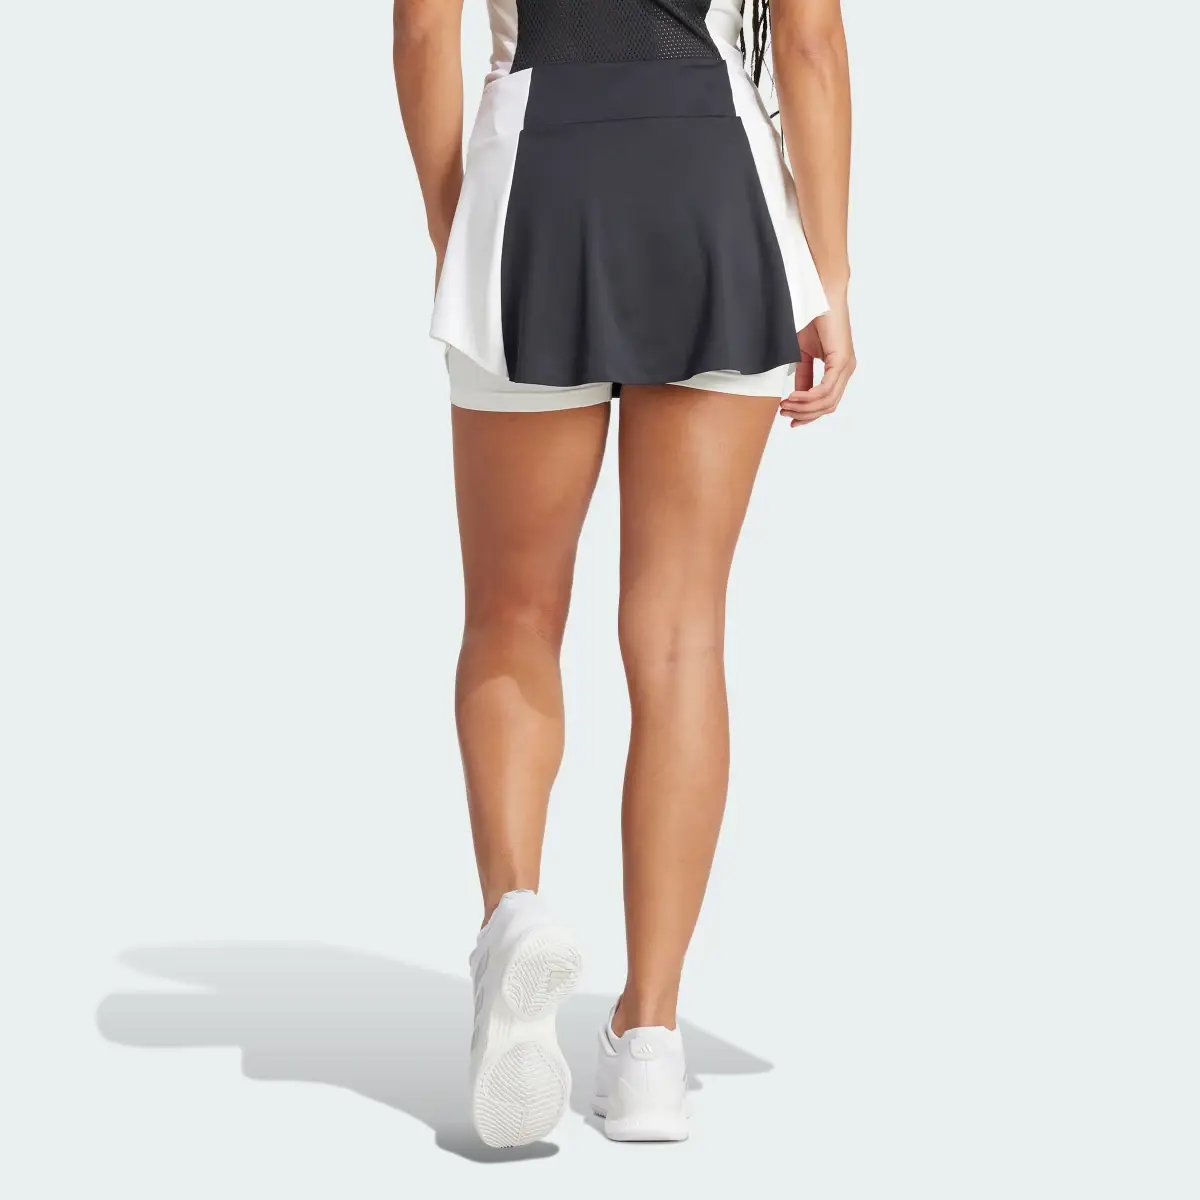 Adidas Spódnica Tennis Premium. 3